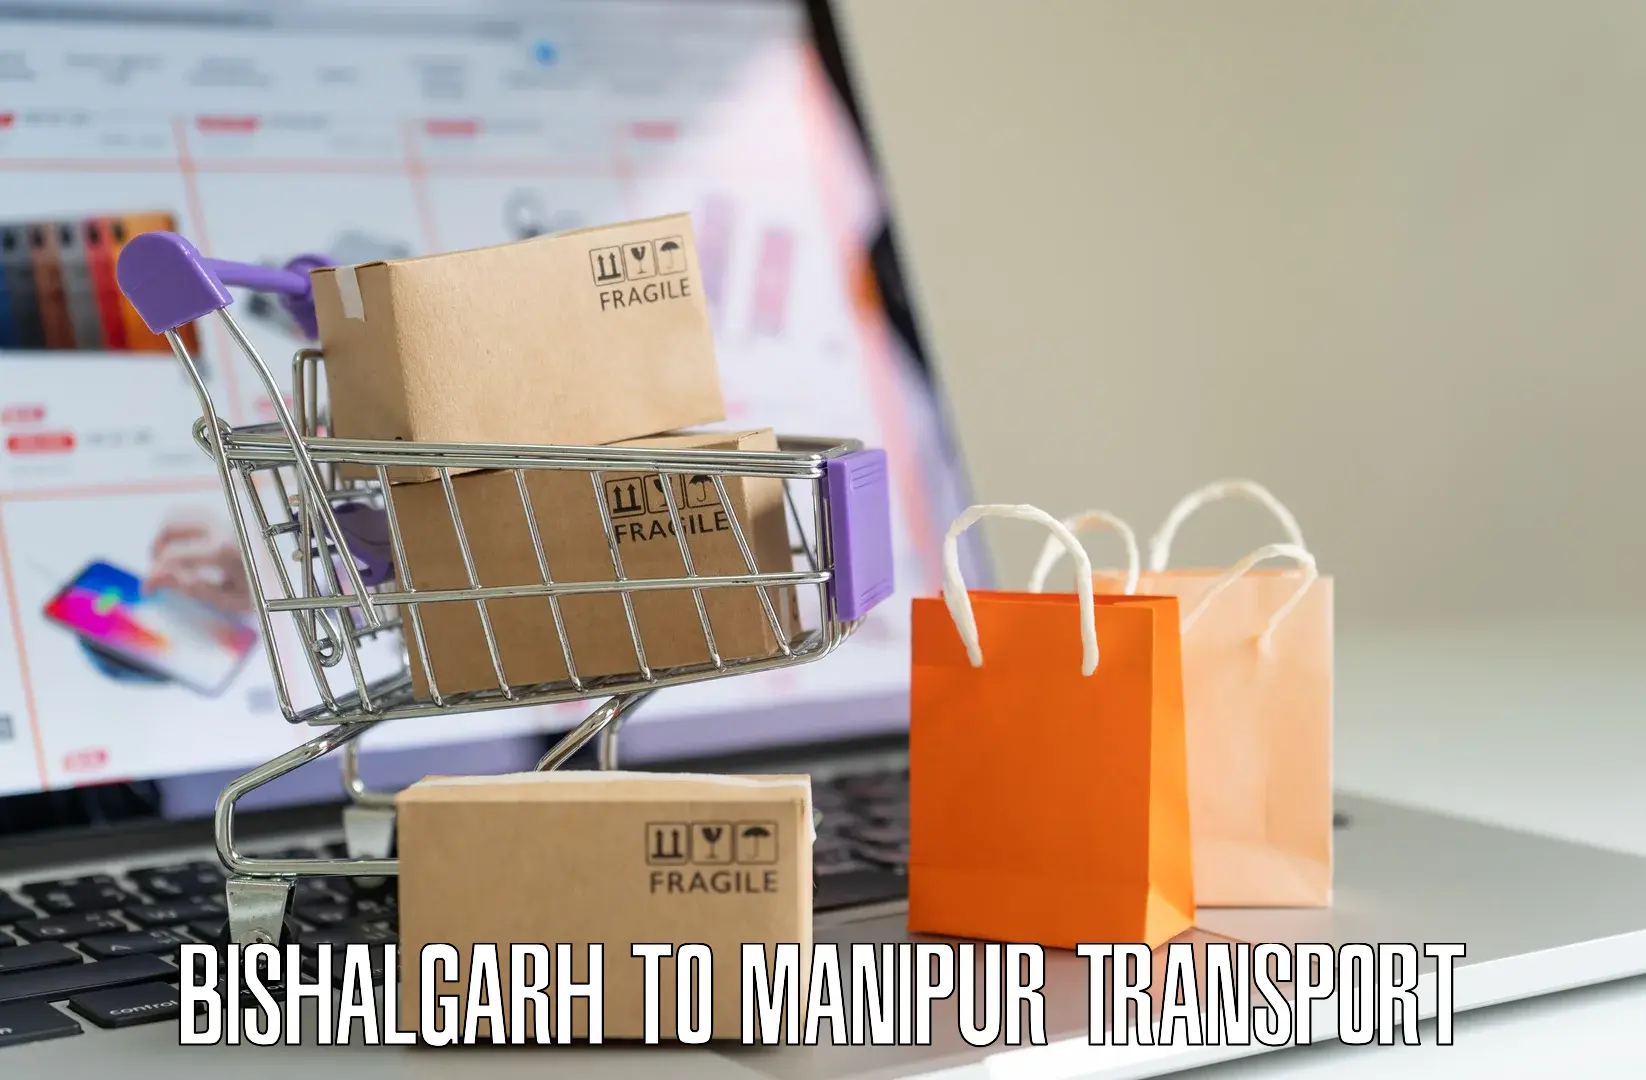 Pick up transport service Bishalgarh to Manipur